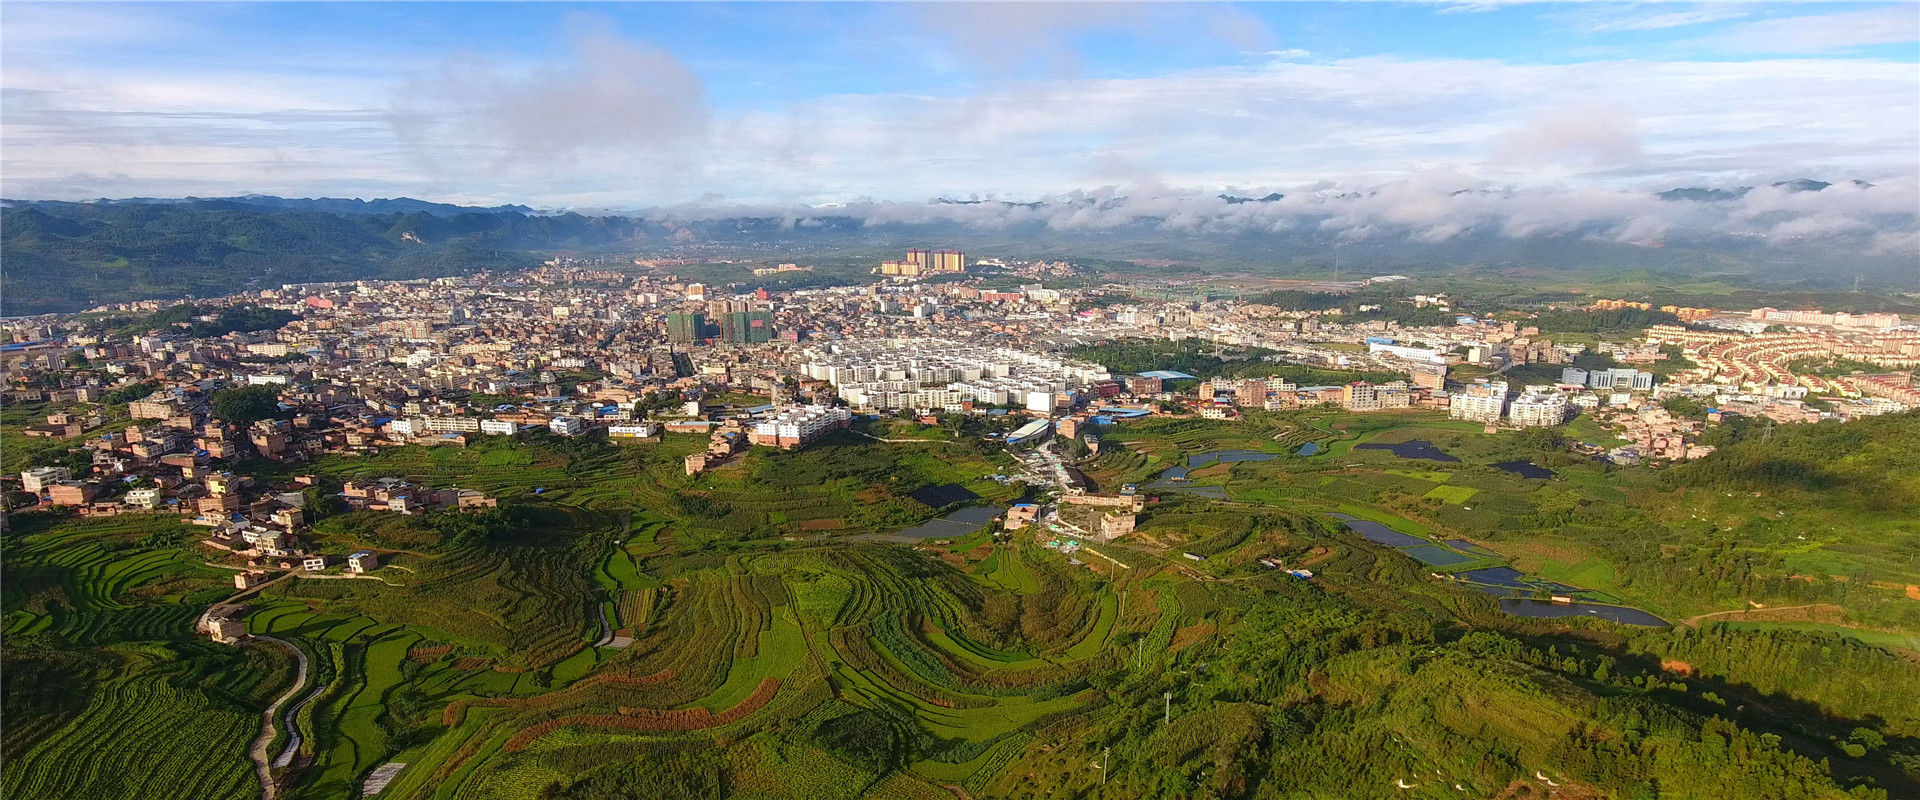 马关县城全景图片